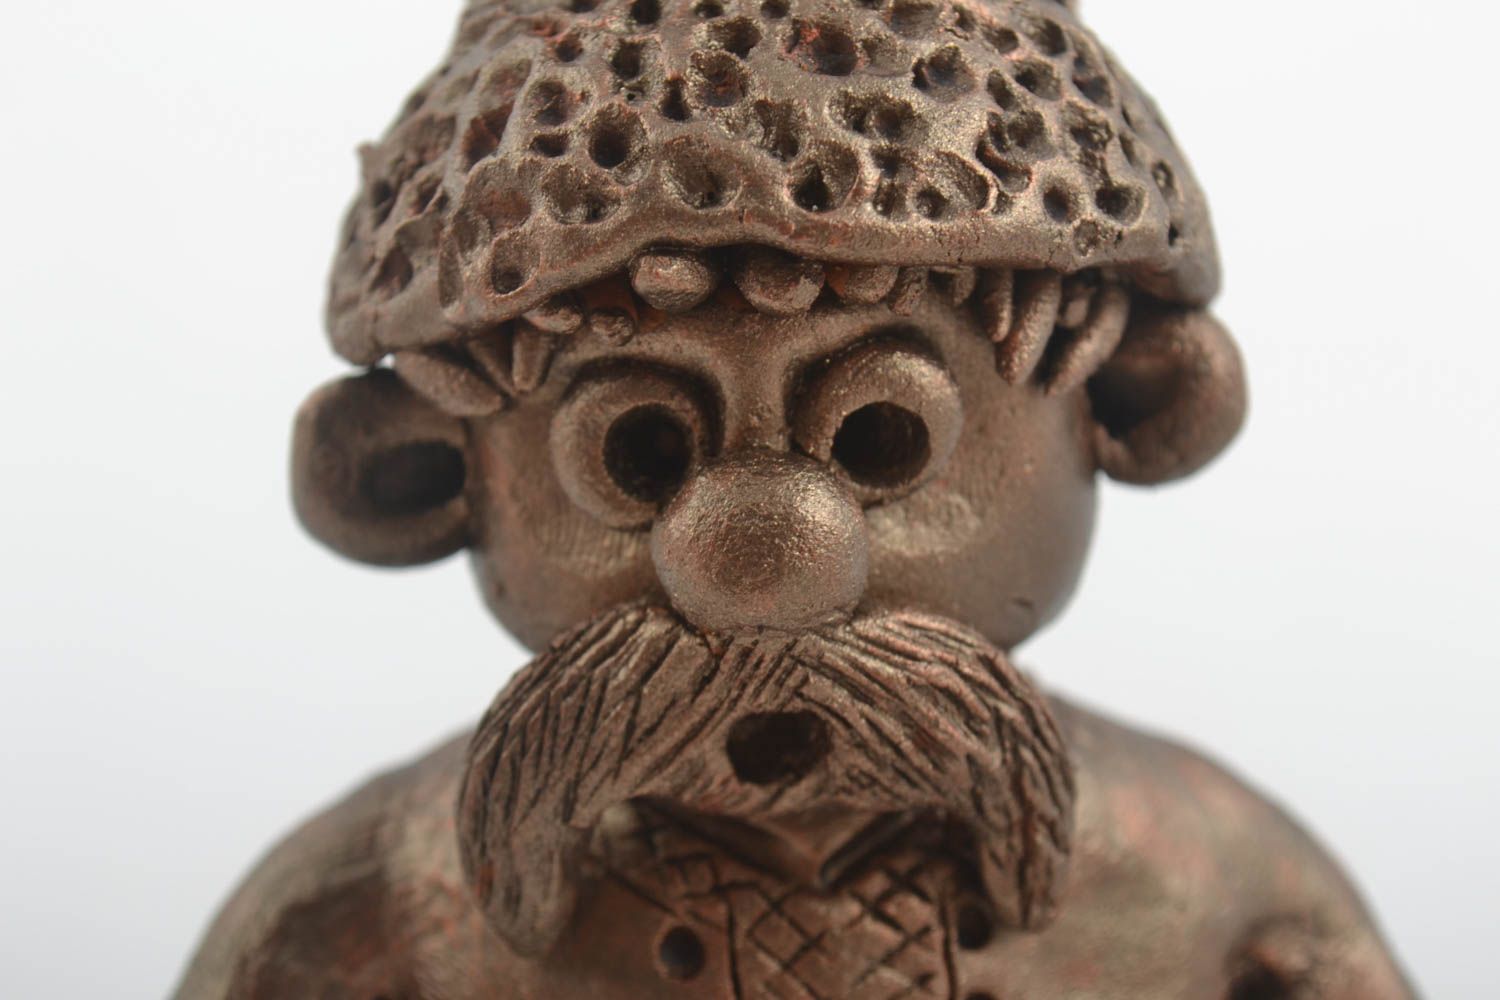 Figurina fatta a mano in ceramica cosacсo divertente souvenir di terracotta foto 3